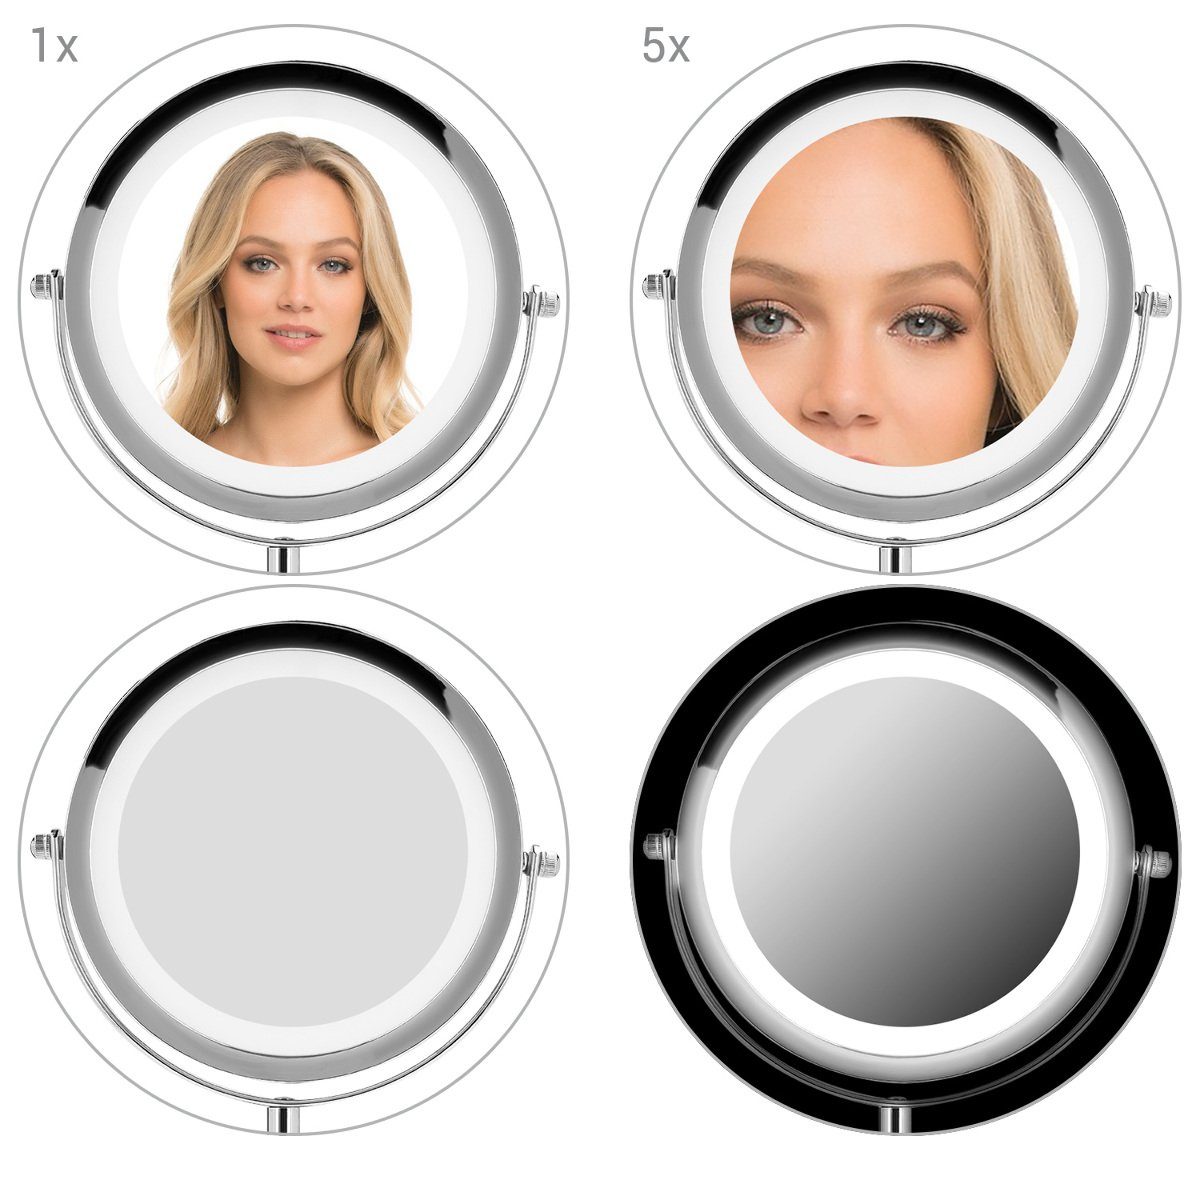 Navaris LED-Lichtspiegel LED Kosmetikspiegel - Vergrößerung 5x Standspiegel Make-up